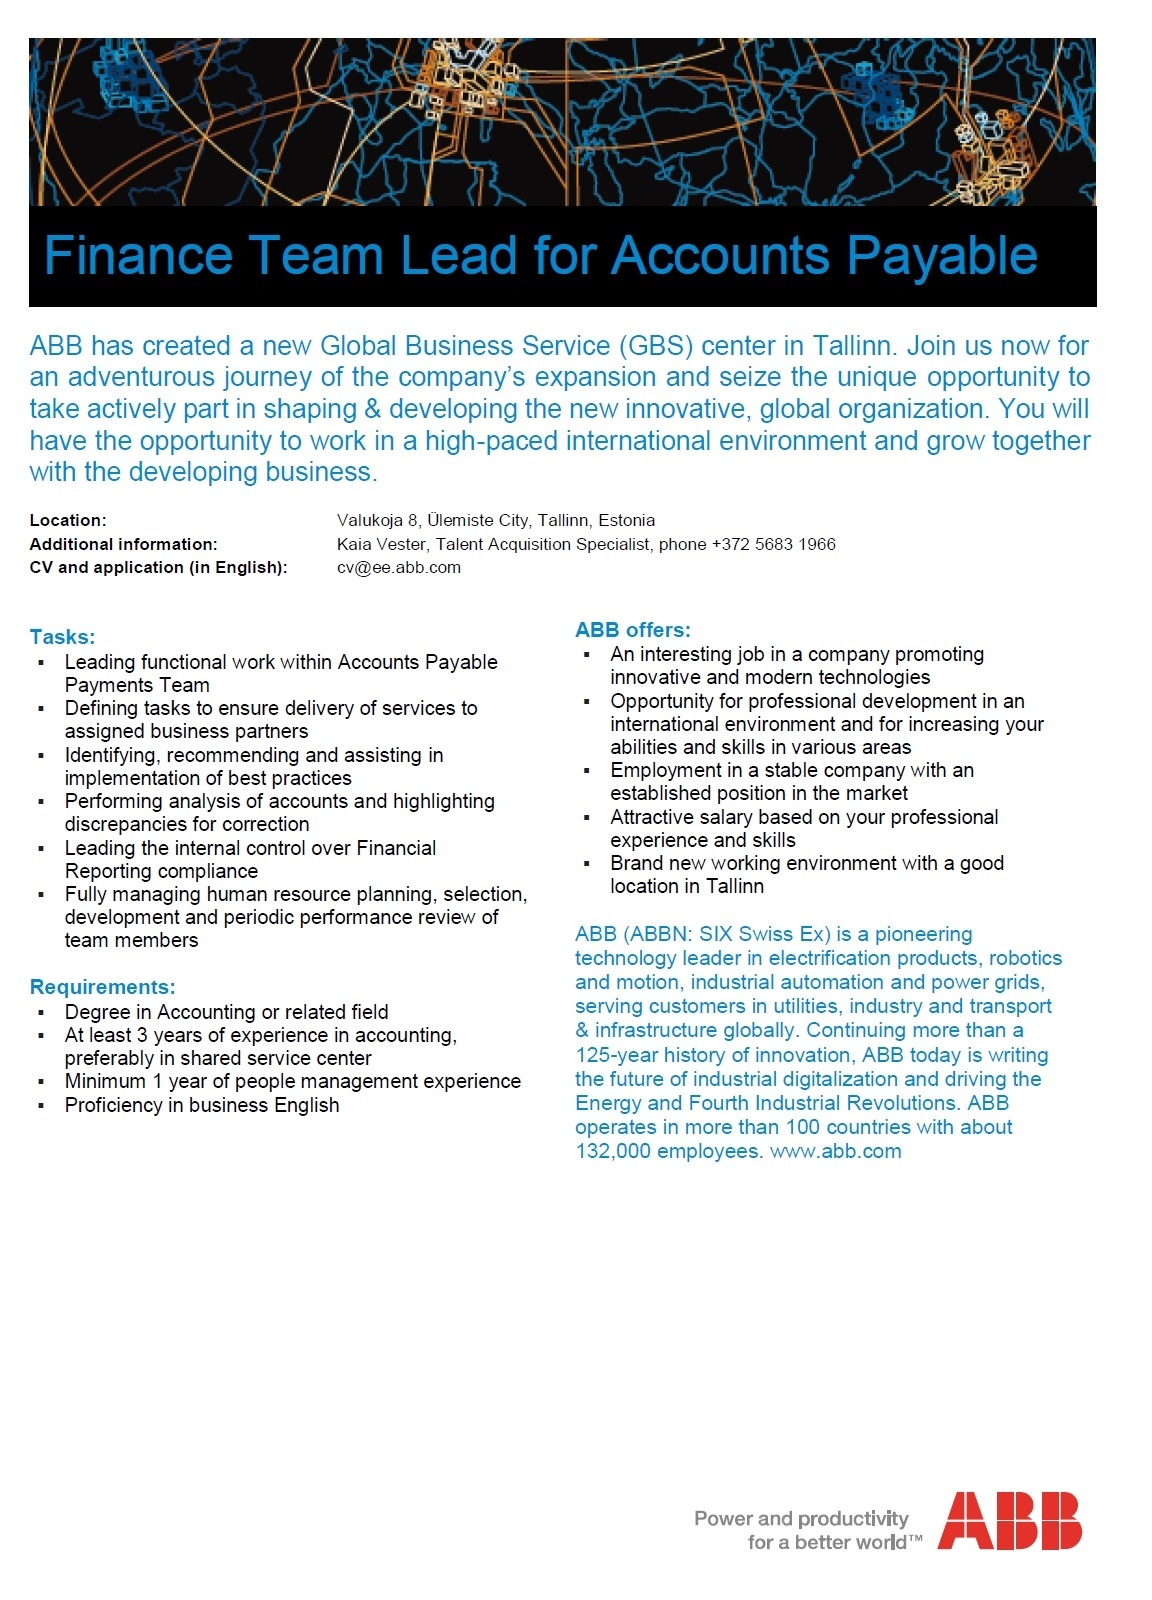 ABB AS Finance Team Lead for Accounts Payable